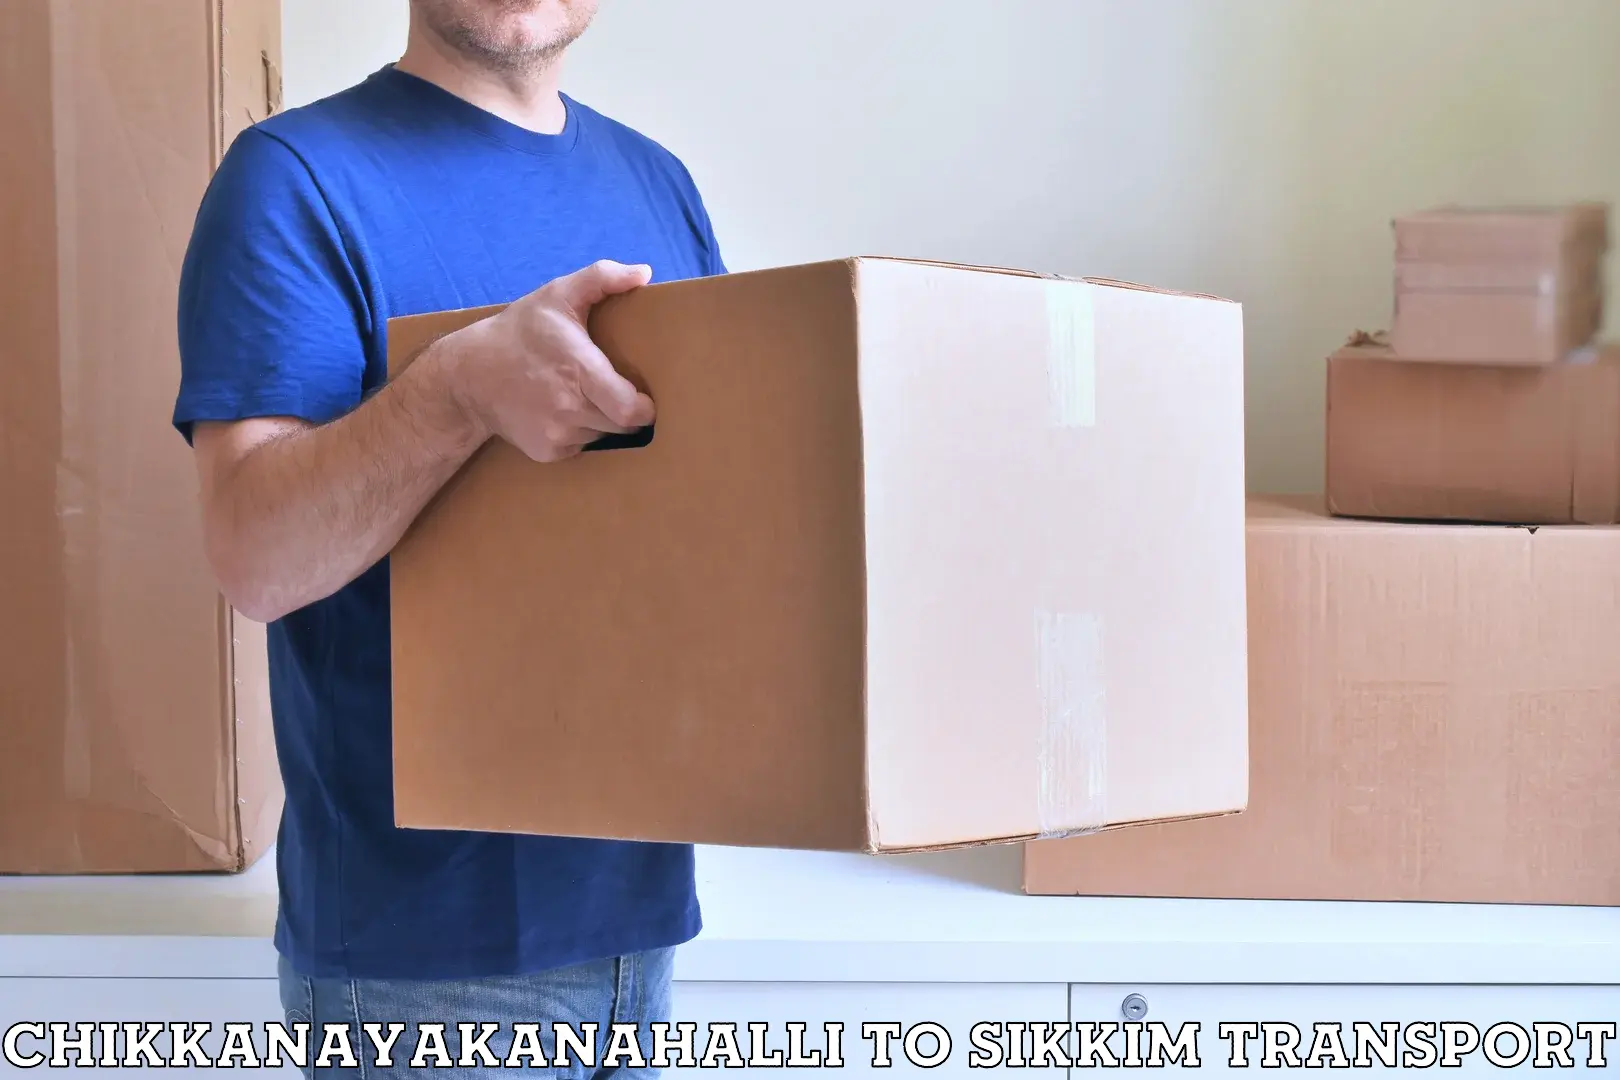 Two wheeler parcel service Chikkanayakanahalli to Geyzing